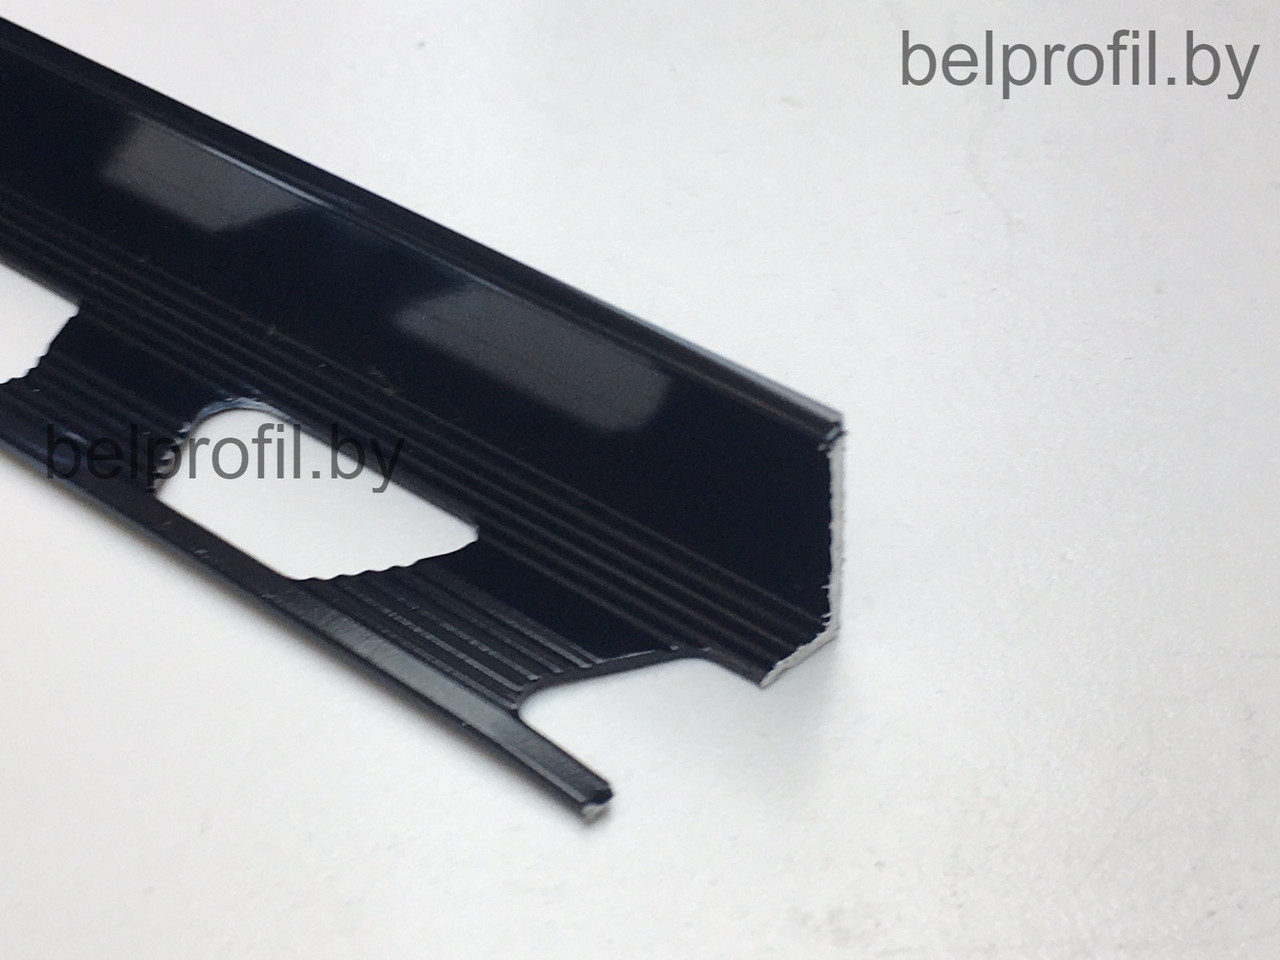 Уголок для плитки L-образный 12 мм, цвет черный глянец, 270 см